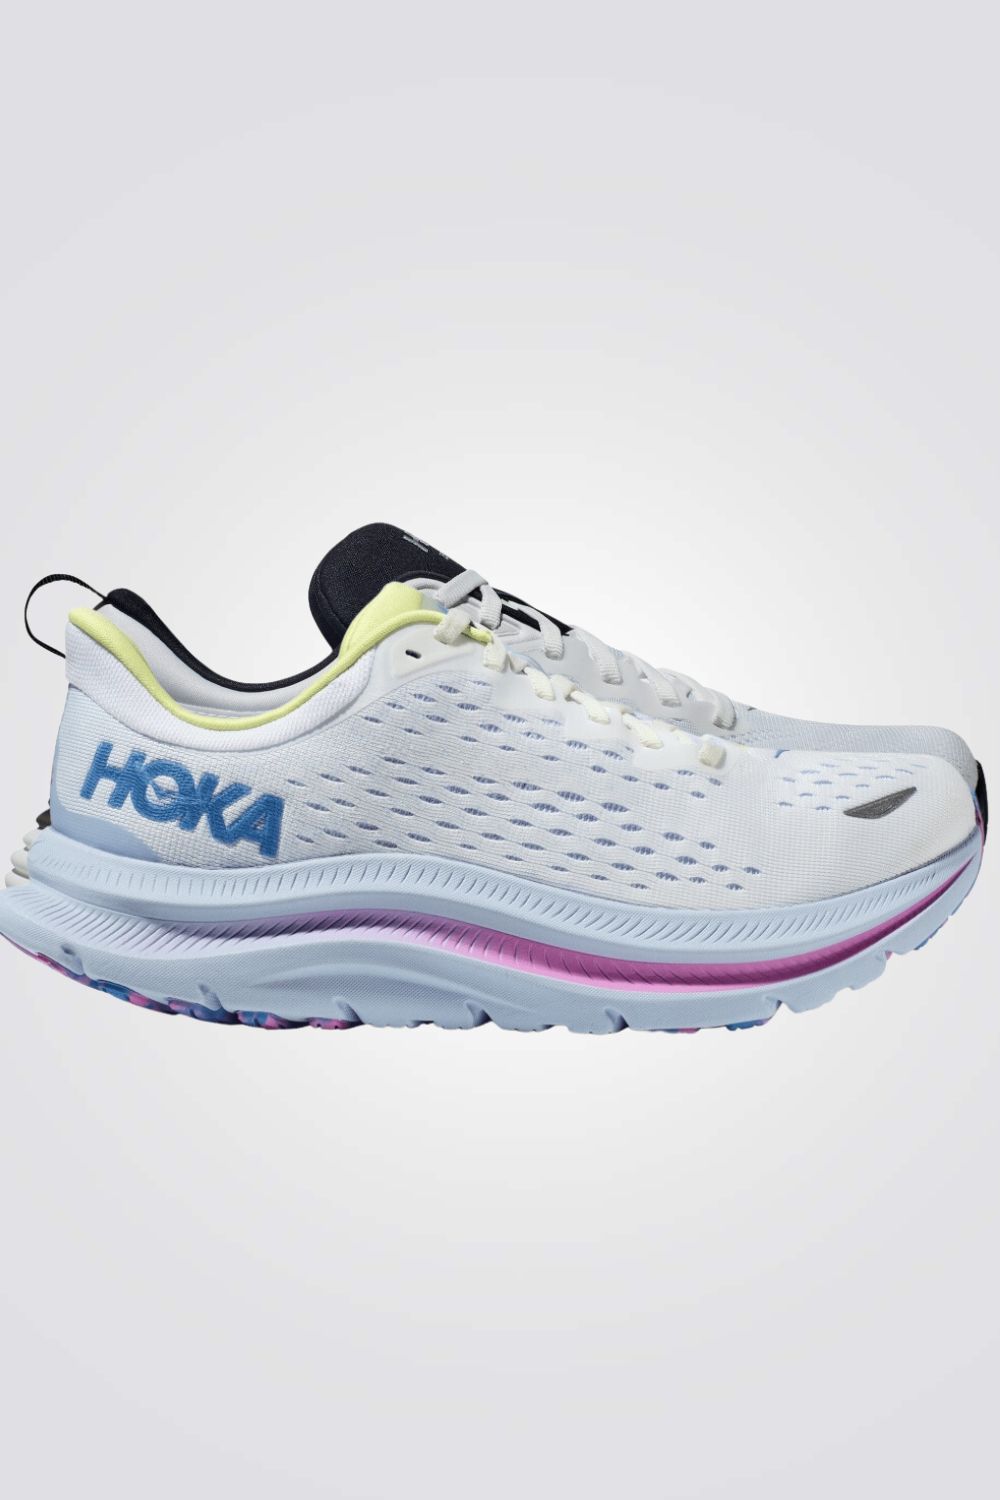 נעלי ספורט לנשים Hoka Kawana בצבע לבן וכחול